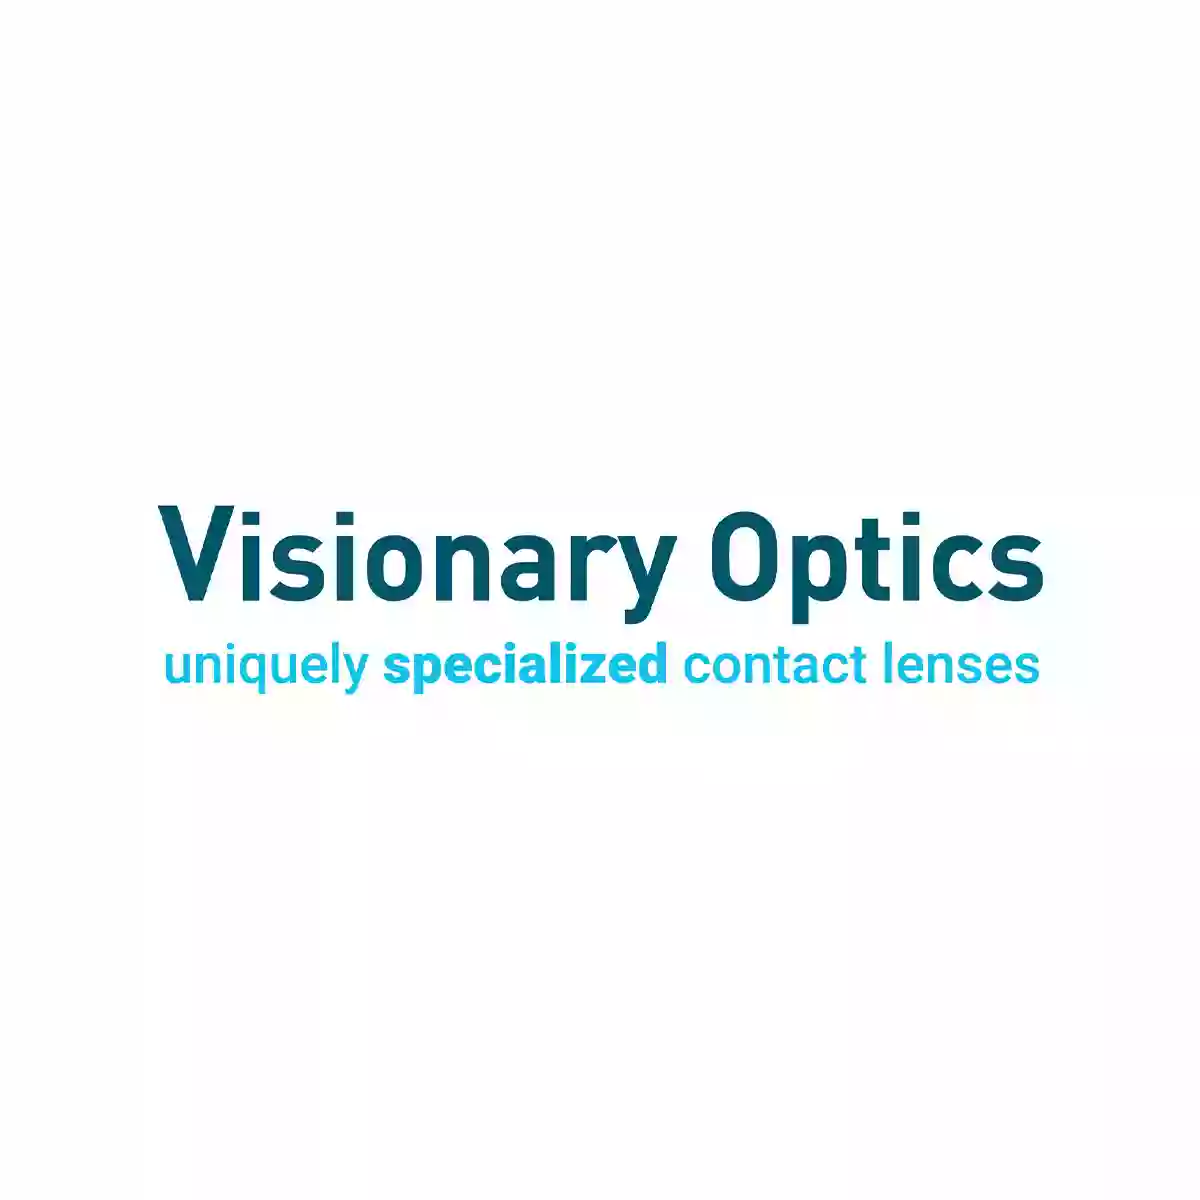 Visionary Optics